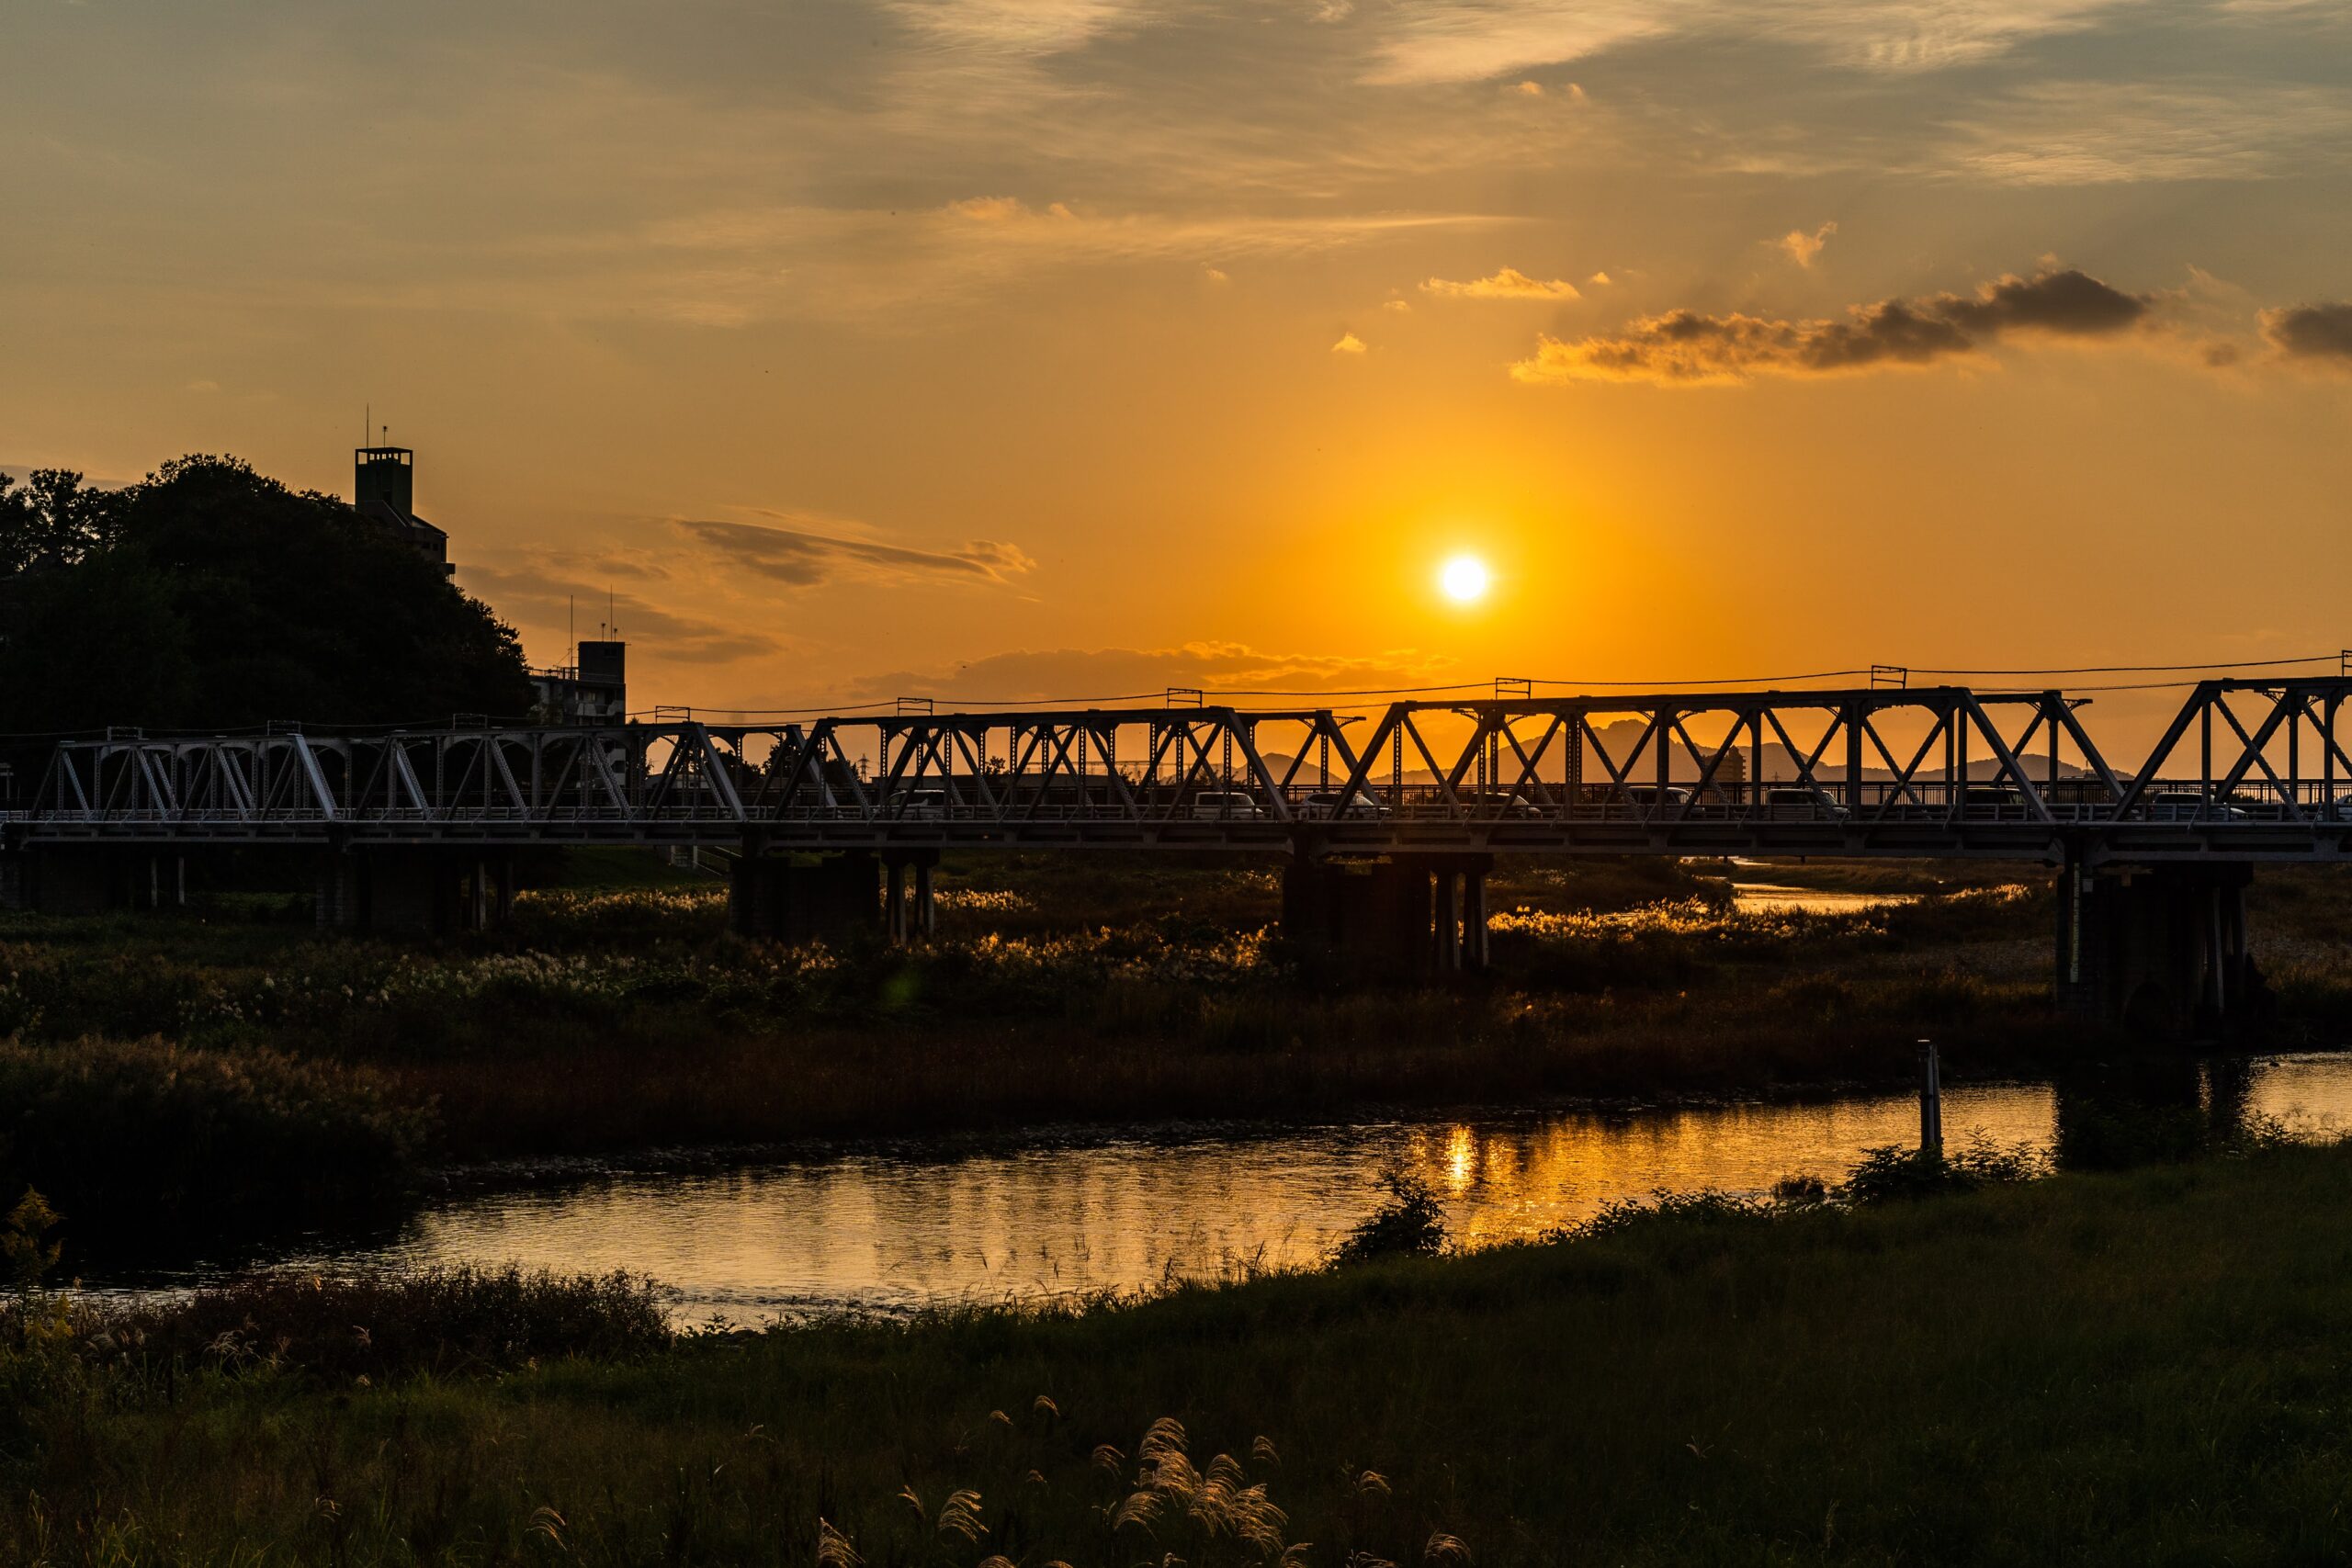 渡良瀬橋の様子を撮影した写真